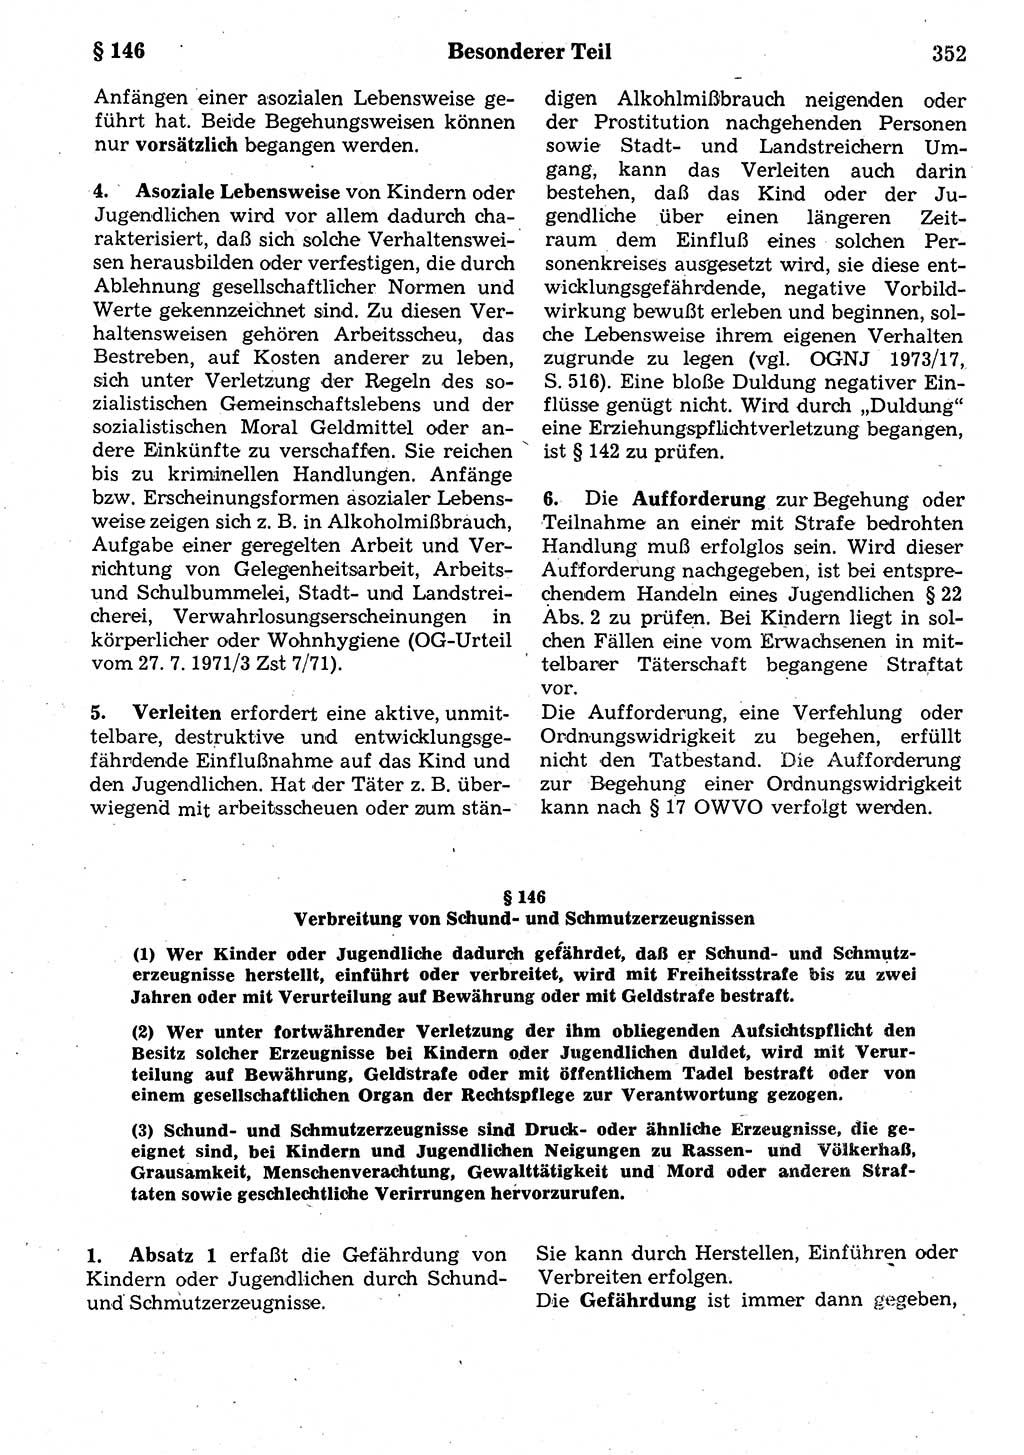 Strafrecht der Deutschen Demokratischen Republik (DDR), Kommentar zum Strafgesetzbuch (StGB) 1987, Seite 352 (Strafr. DDR Komm. StGB 1987, S. 352)